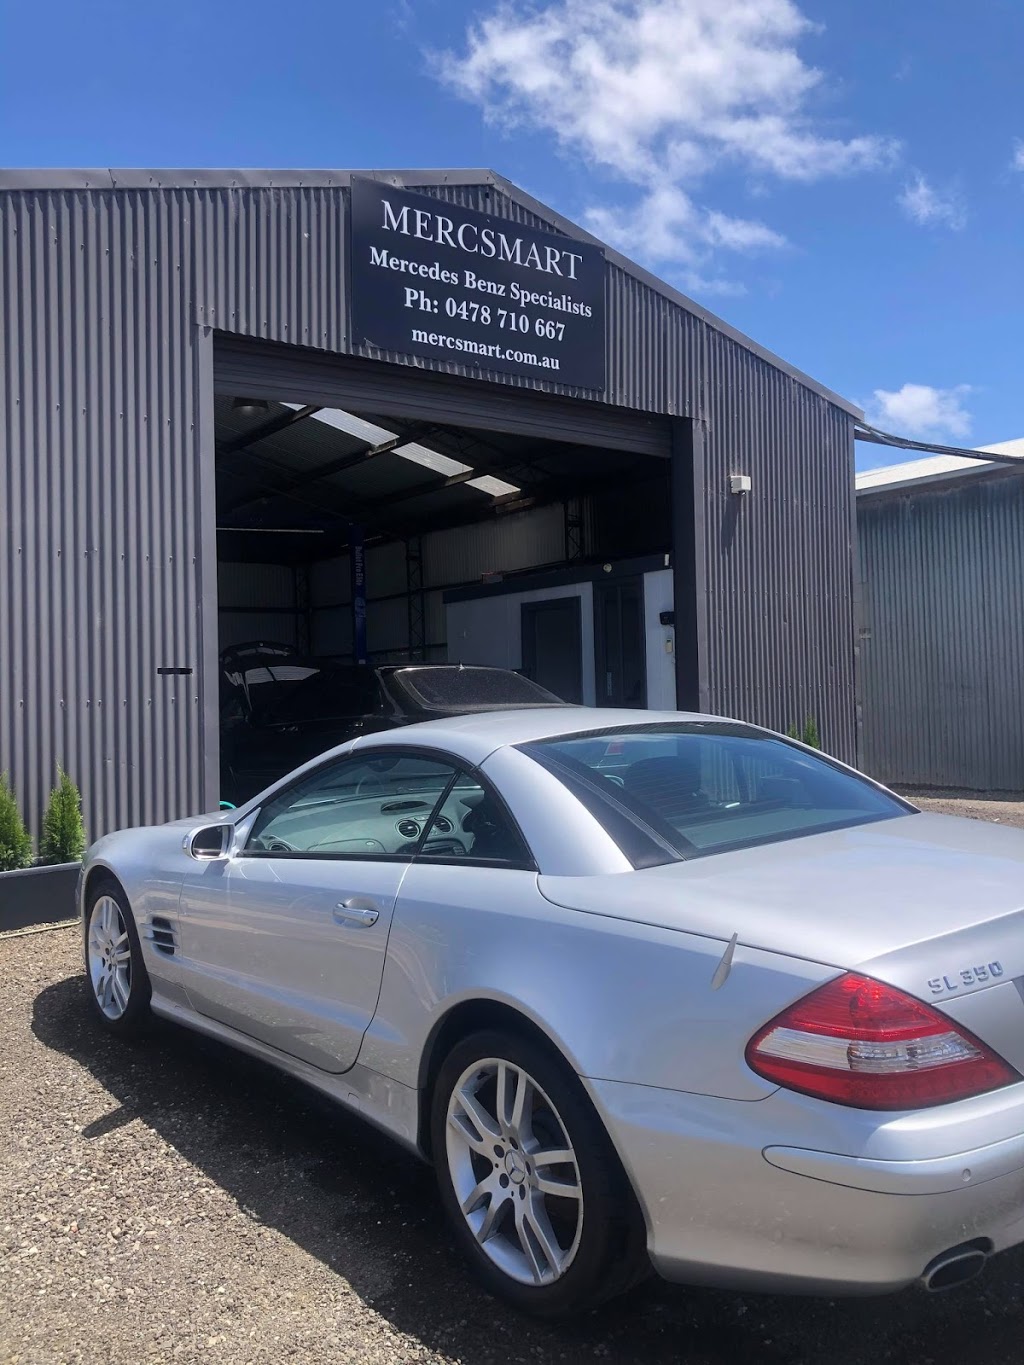 Mercsmart - Geelong Mercedes Specialist | car repair | 1/33 Crows Rd, Belmont VIC 3216, Australia | 0478710667 OR +61 478 710 667